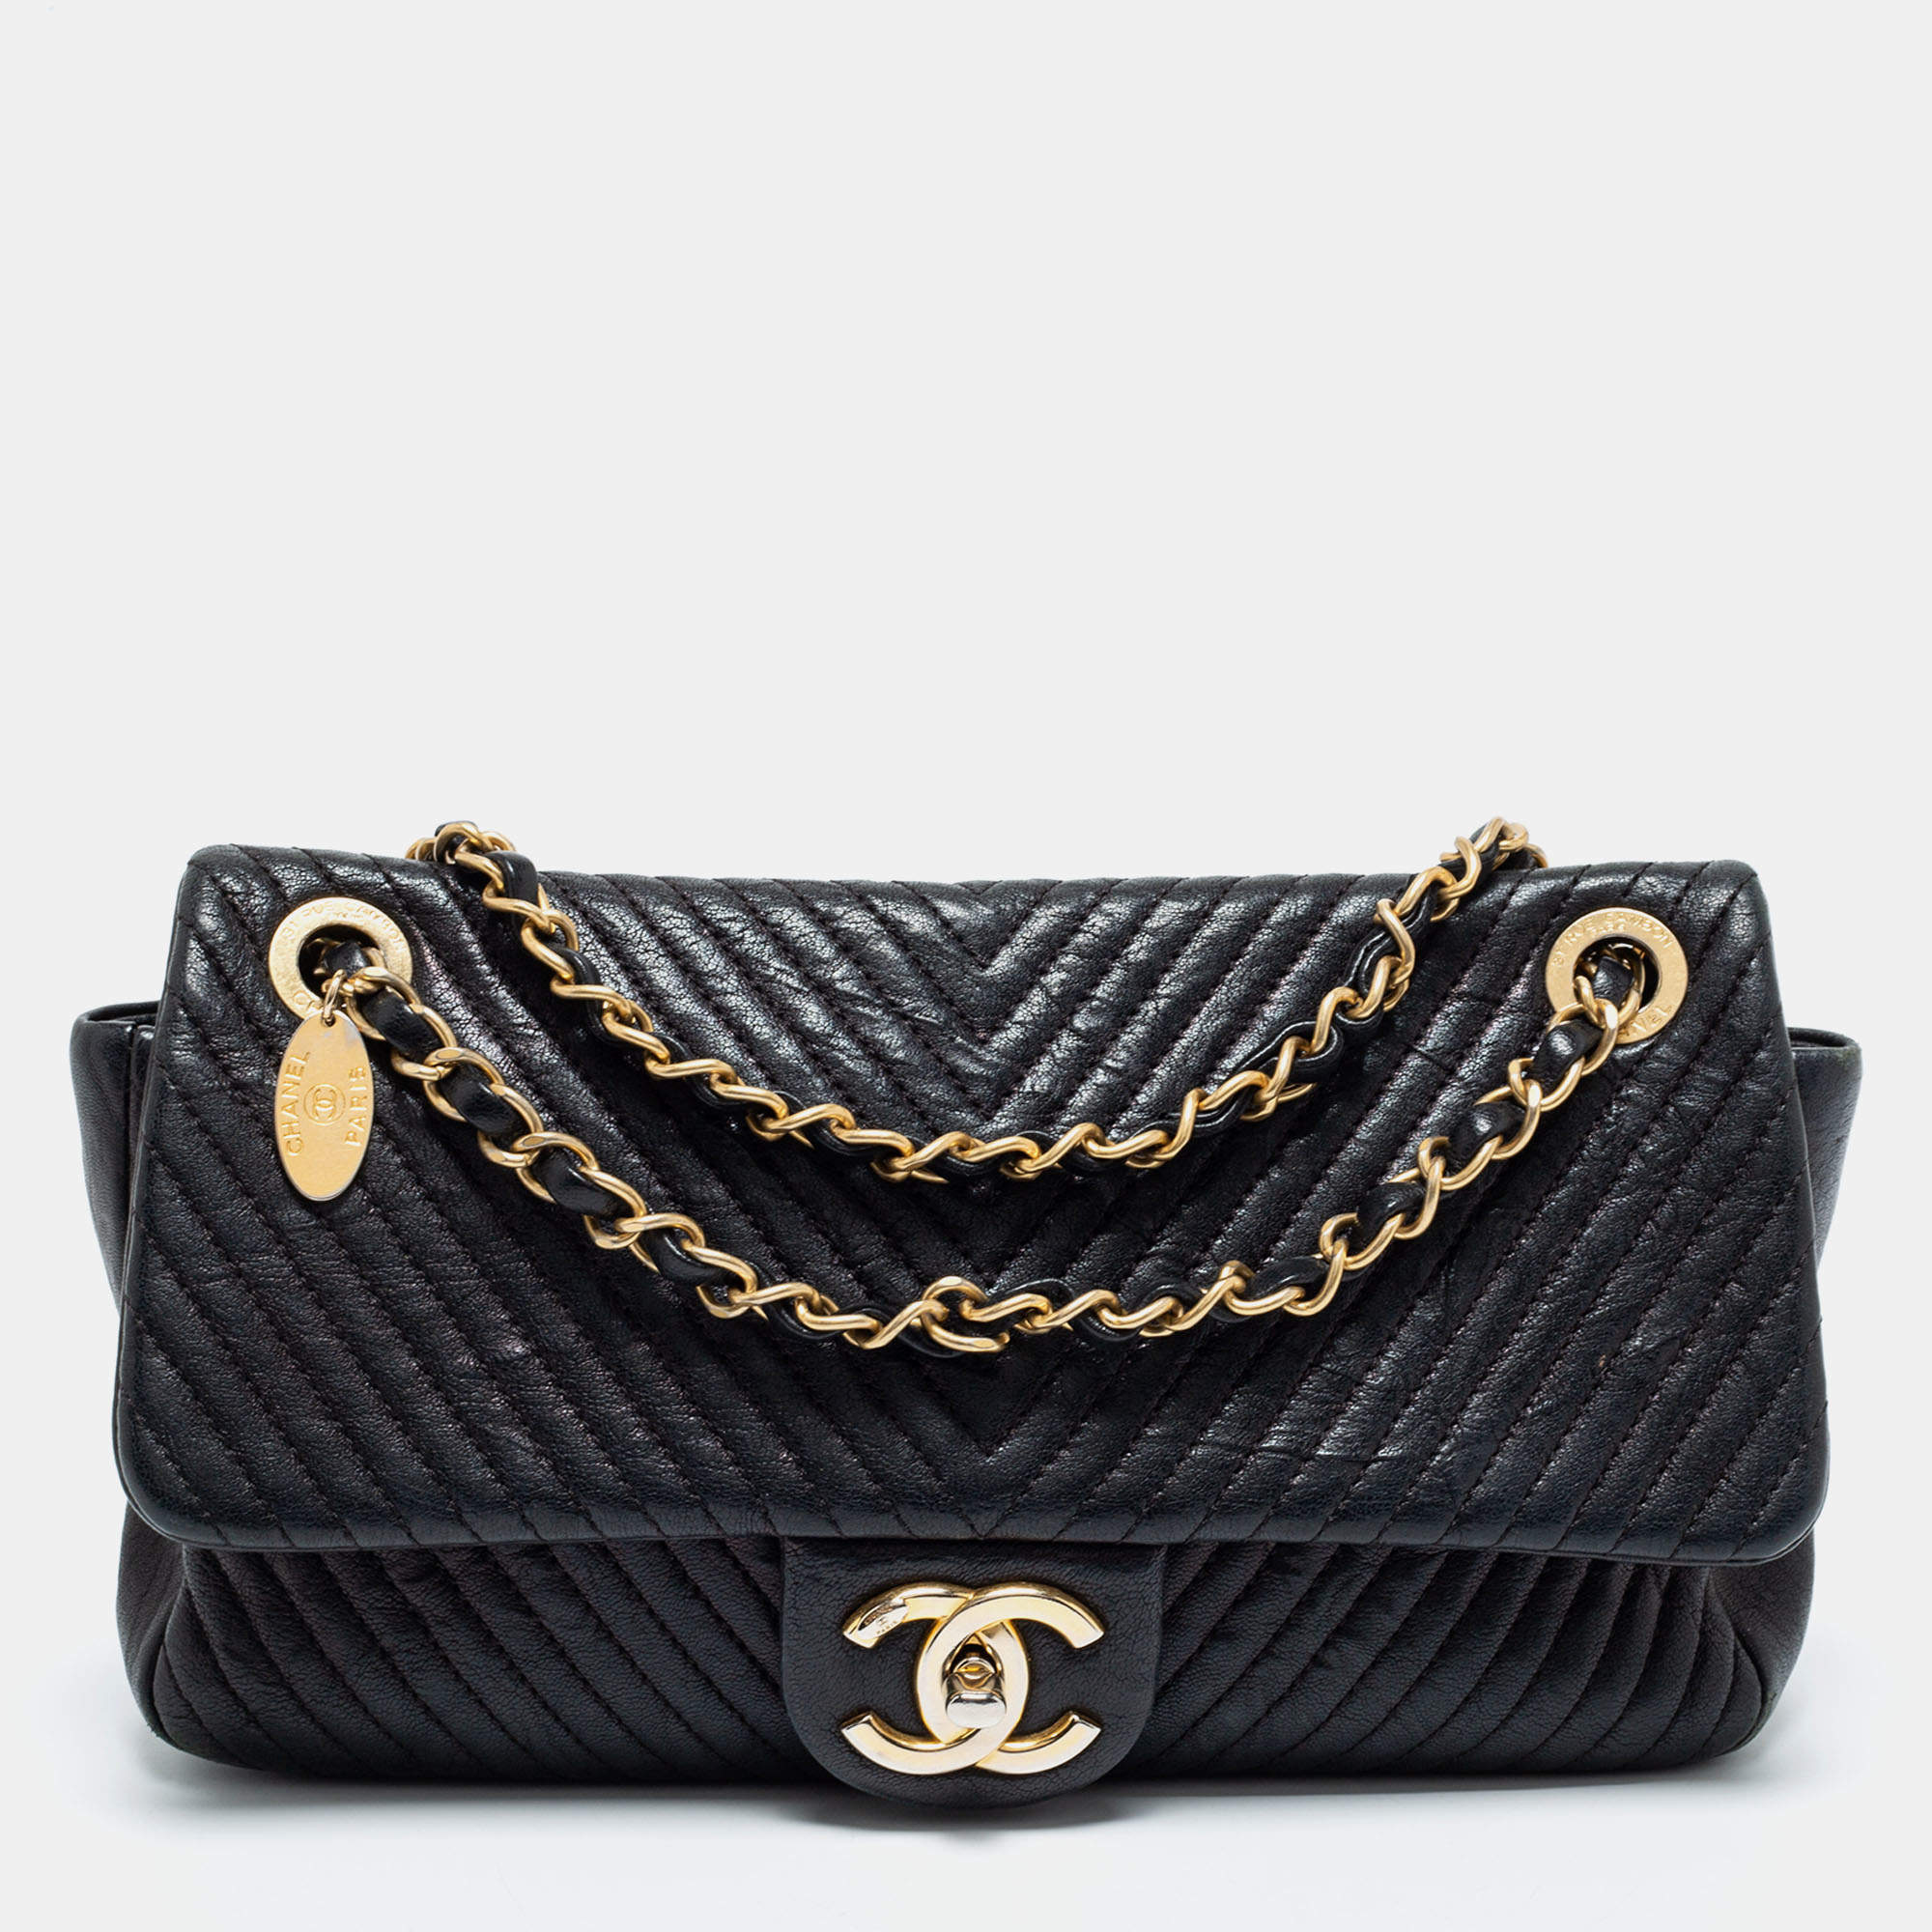 Chanel Black Surpique Chevron Leather Medium Flap Bag Chanel